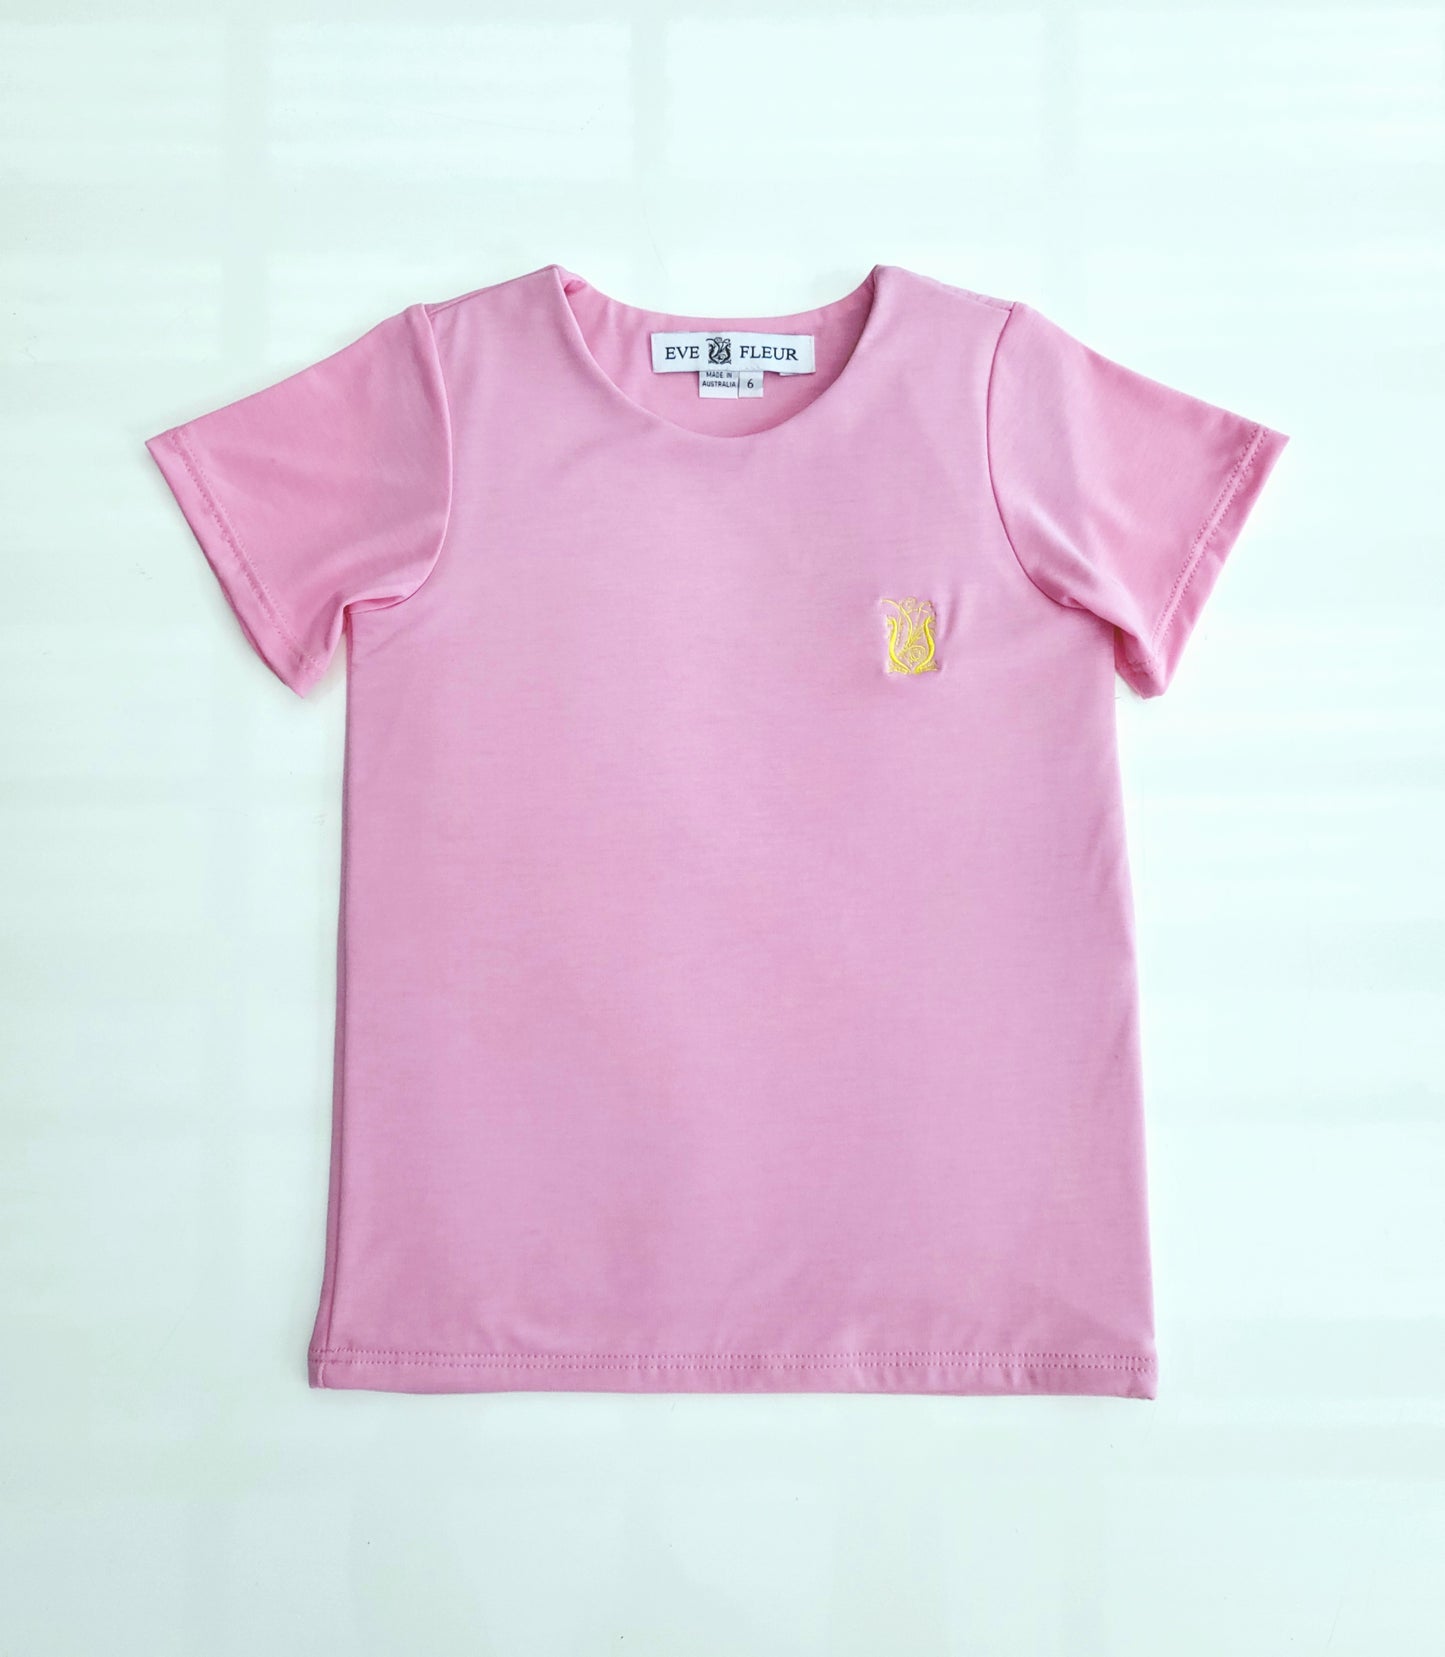 Eve Fleur - EMF Shielding Kids Tee Shirt - Pink - Schild